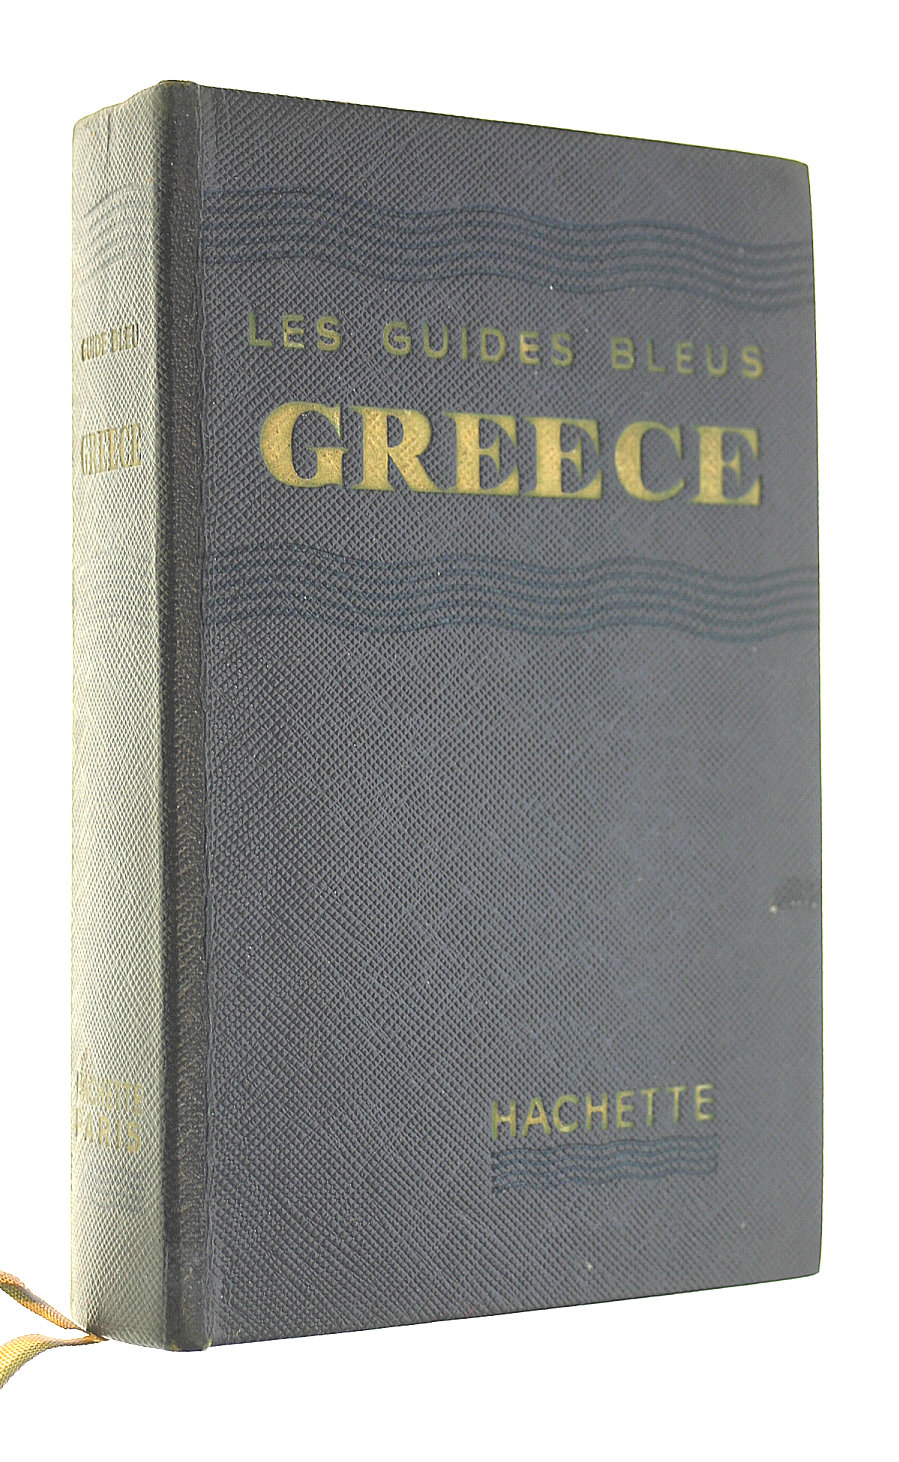 F AMBRIERE - Les Guides Bleus Greece